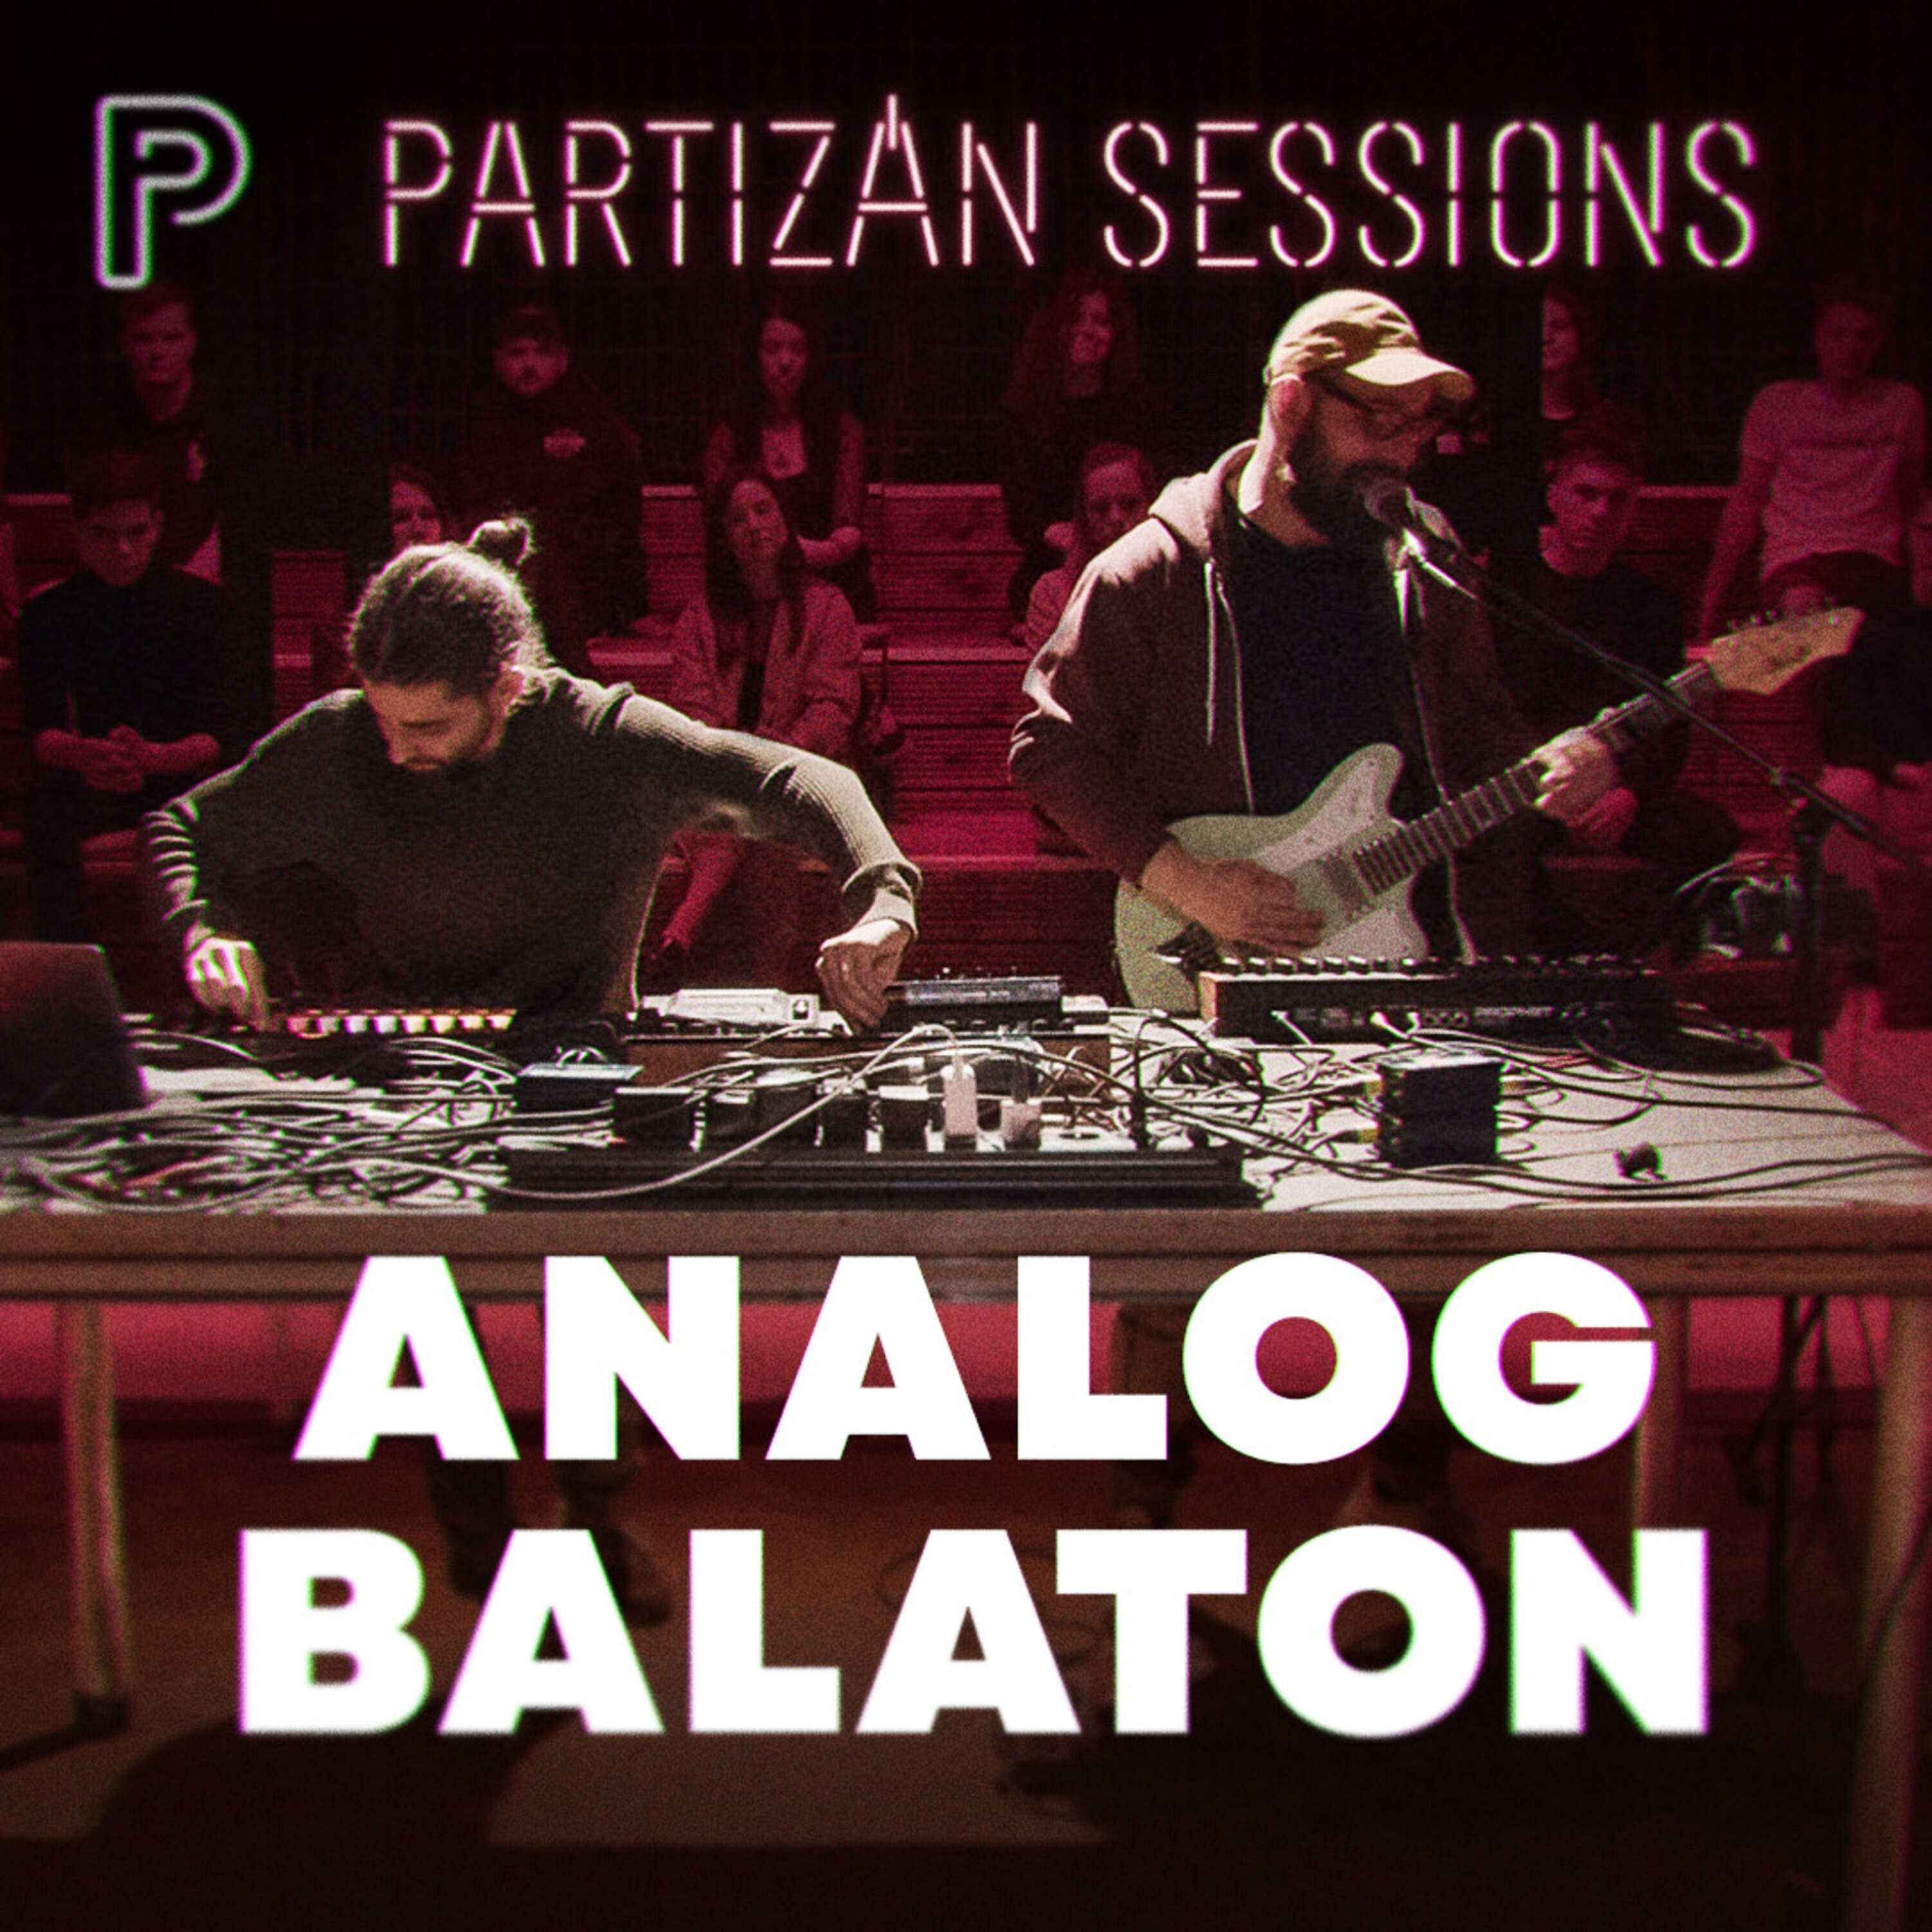 Analog Balaton - Könnyű | Partizán Sessions